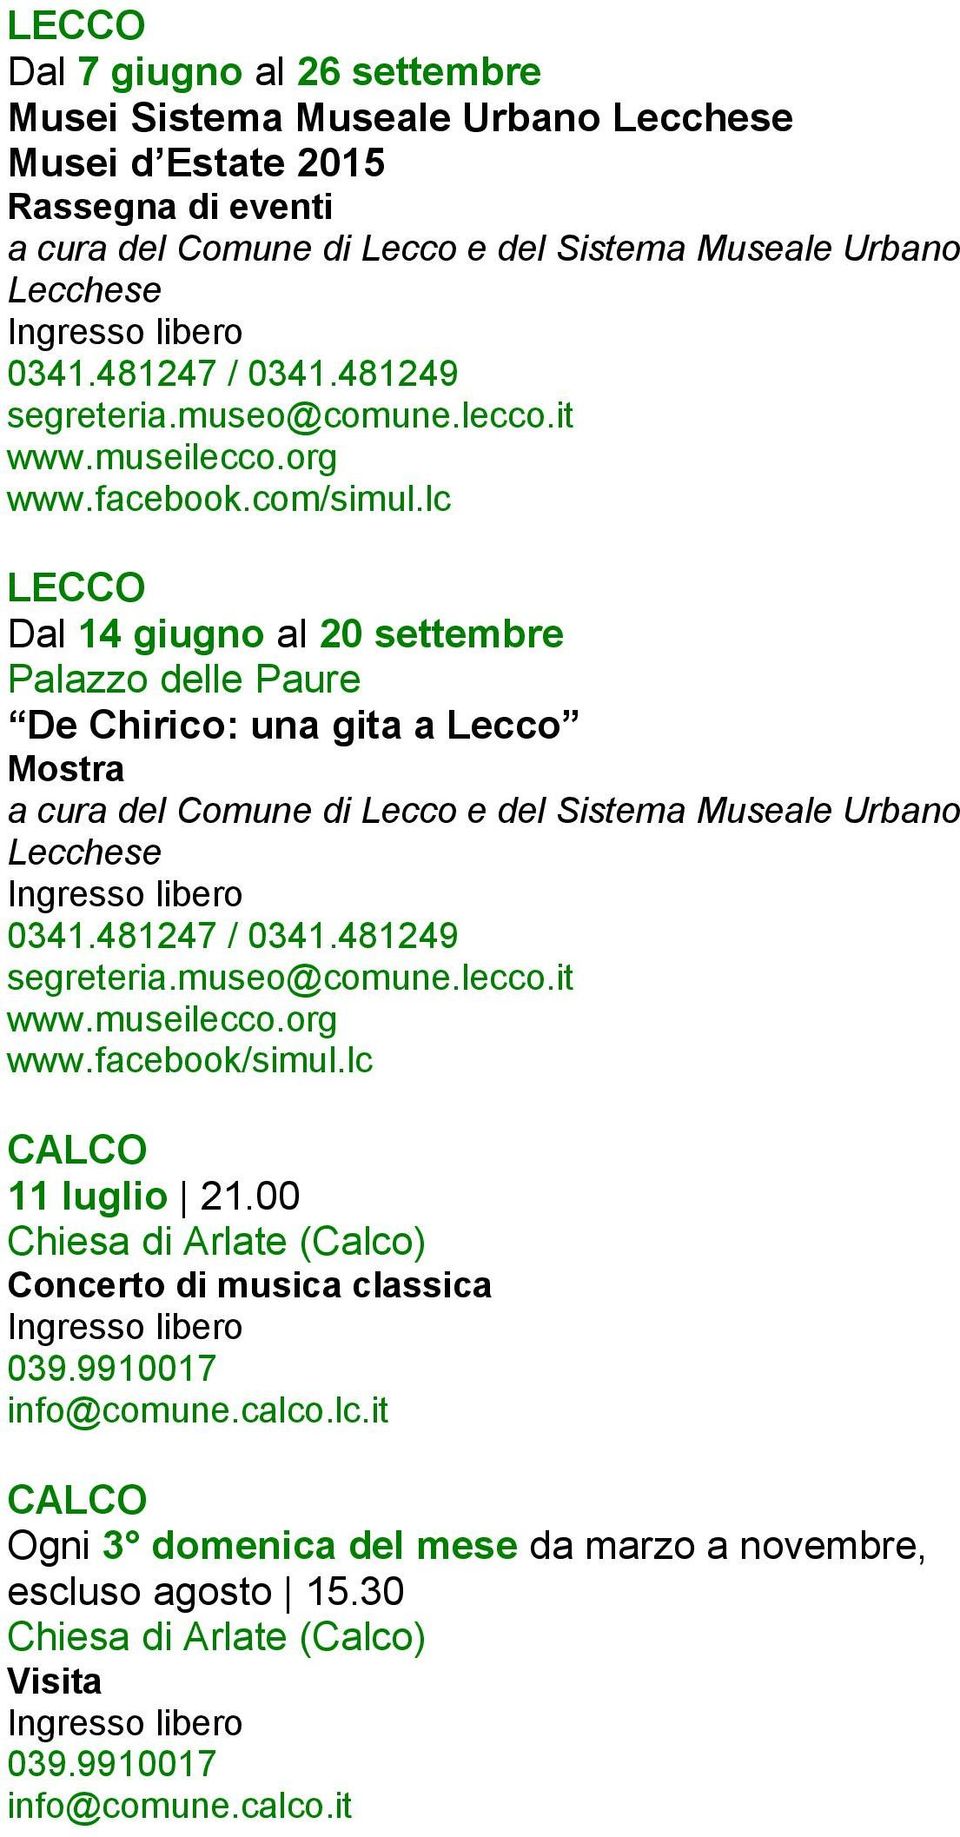 lc LECCO Dal 14 giugno al 20 settembre Palazzo delle Paure De Chirico: una gita a Lecco Mostra a cura del Comune di Lecco e del Sistema Museale Urbano Lecchese 0341.481247 / 0341.481249 segreteria.